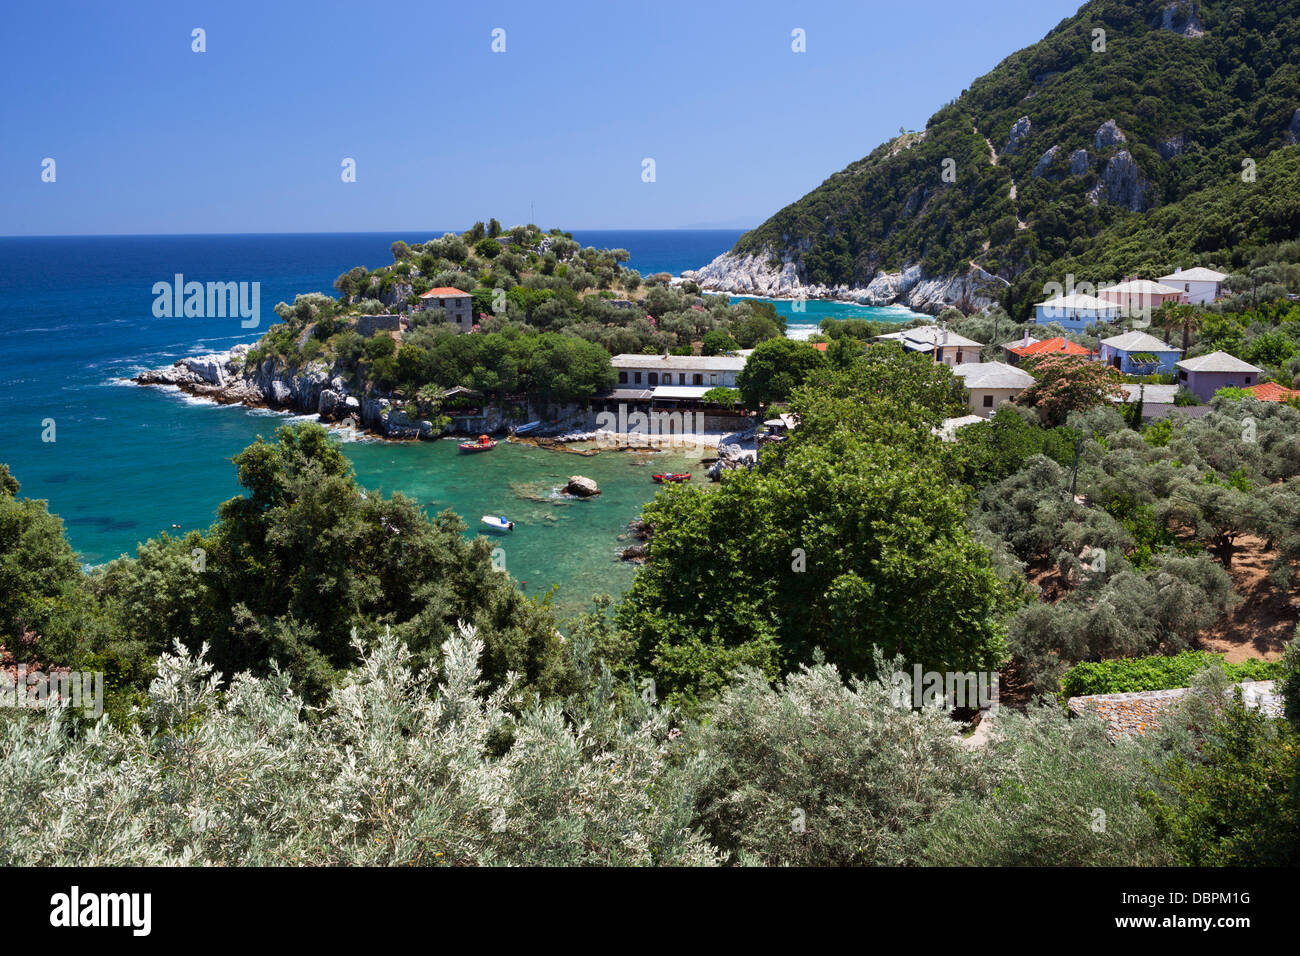 Emplacement pour le film Mamma Mia !, Damouchari, péninsule de Pelion, Thessalie, Grèce, Europe Banque D'Images